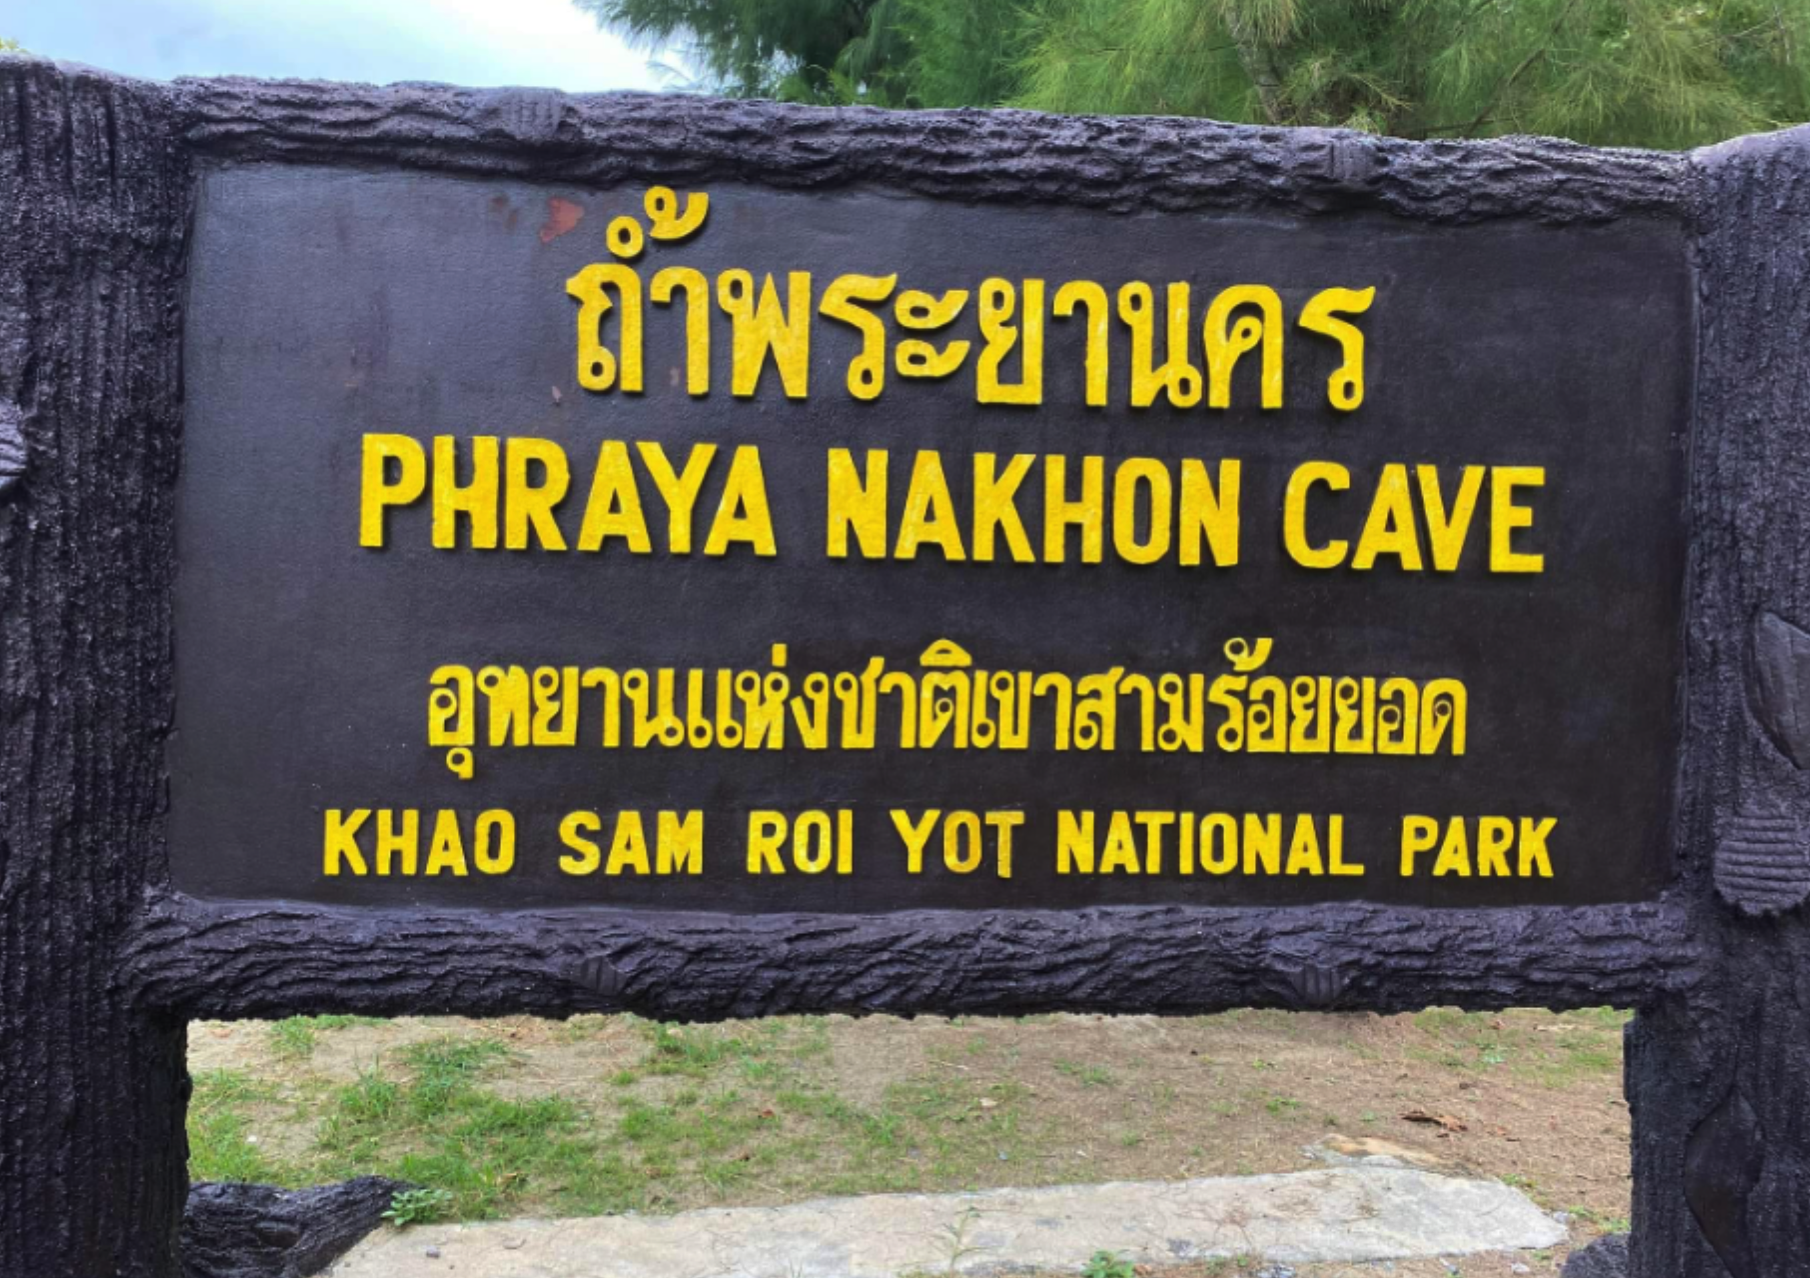 Phraya Nakhon Caves Sign